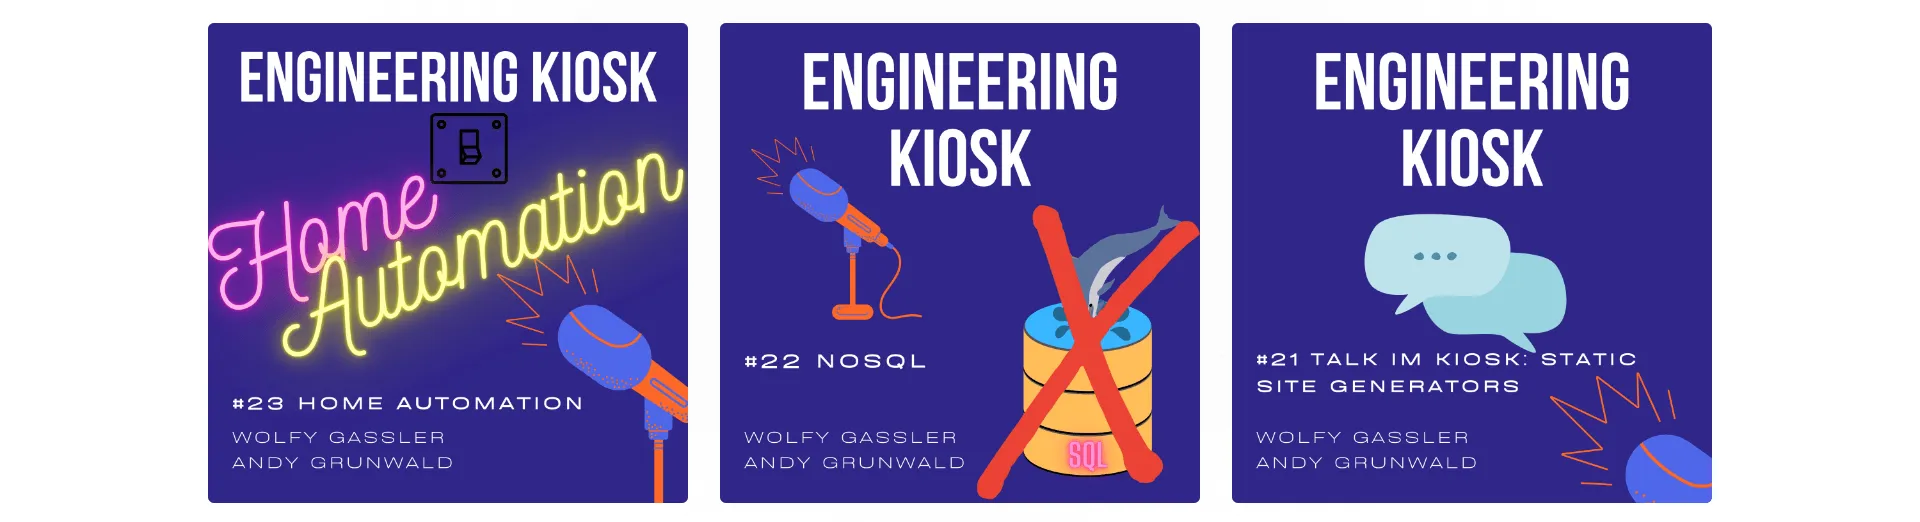 Die Engineering Kiosk Website